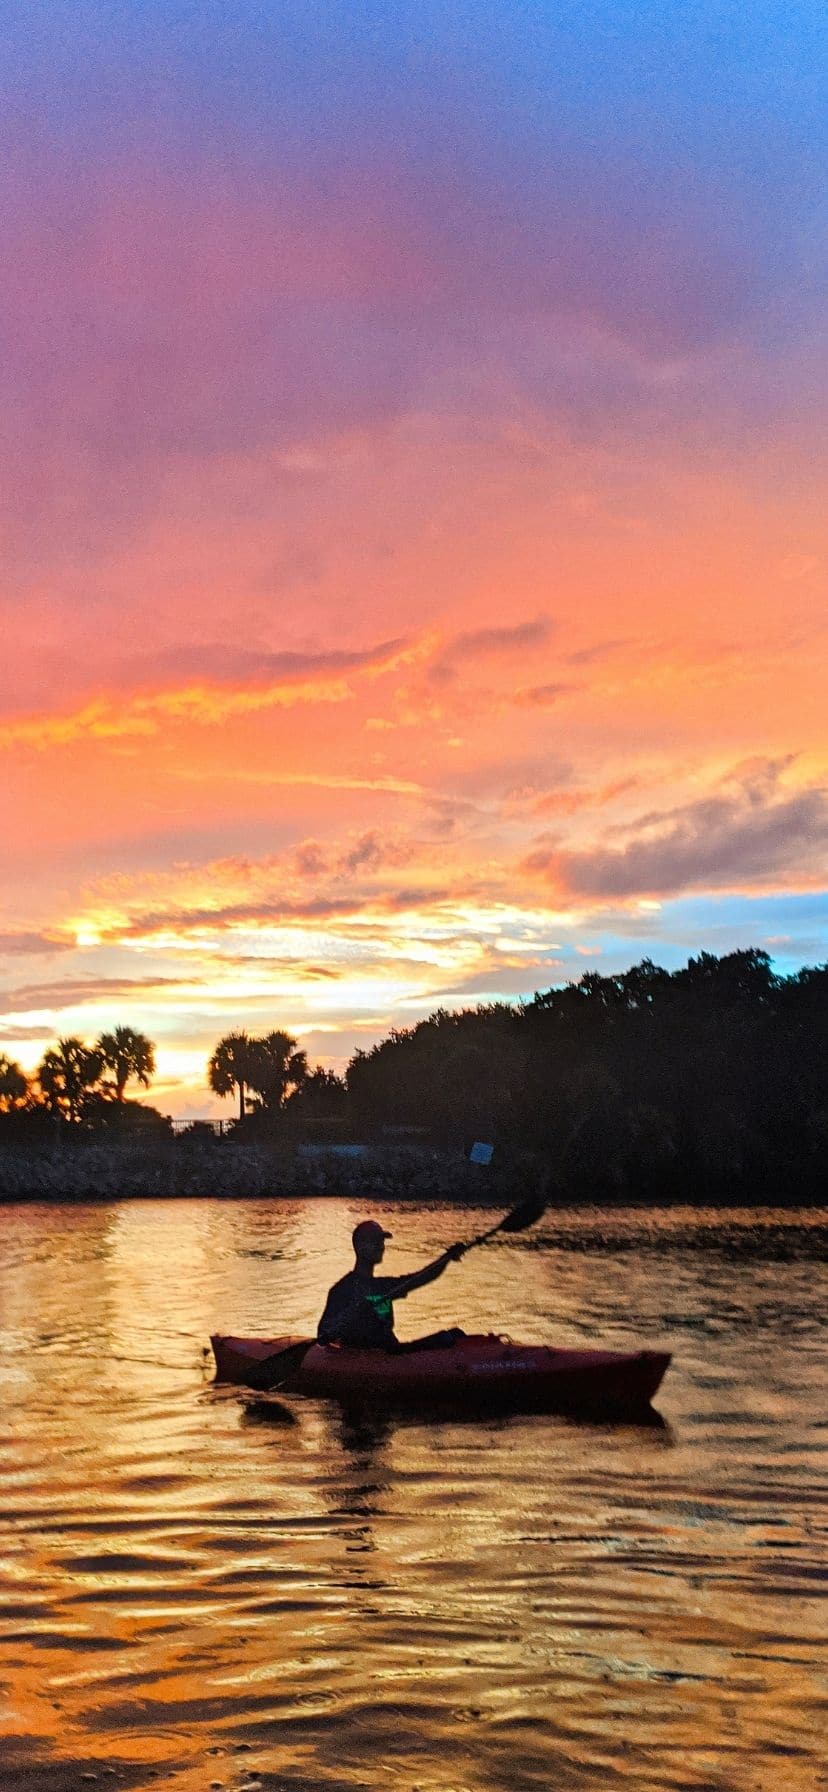 Sunset Bioluminescent Kayaking in Florida, near Cocoa Beach